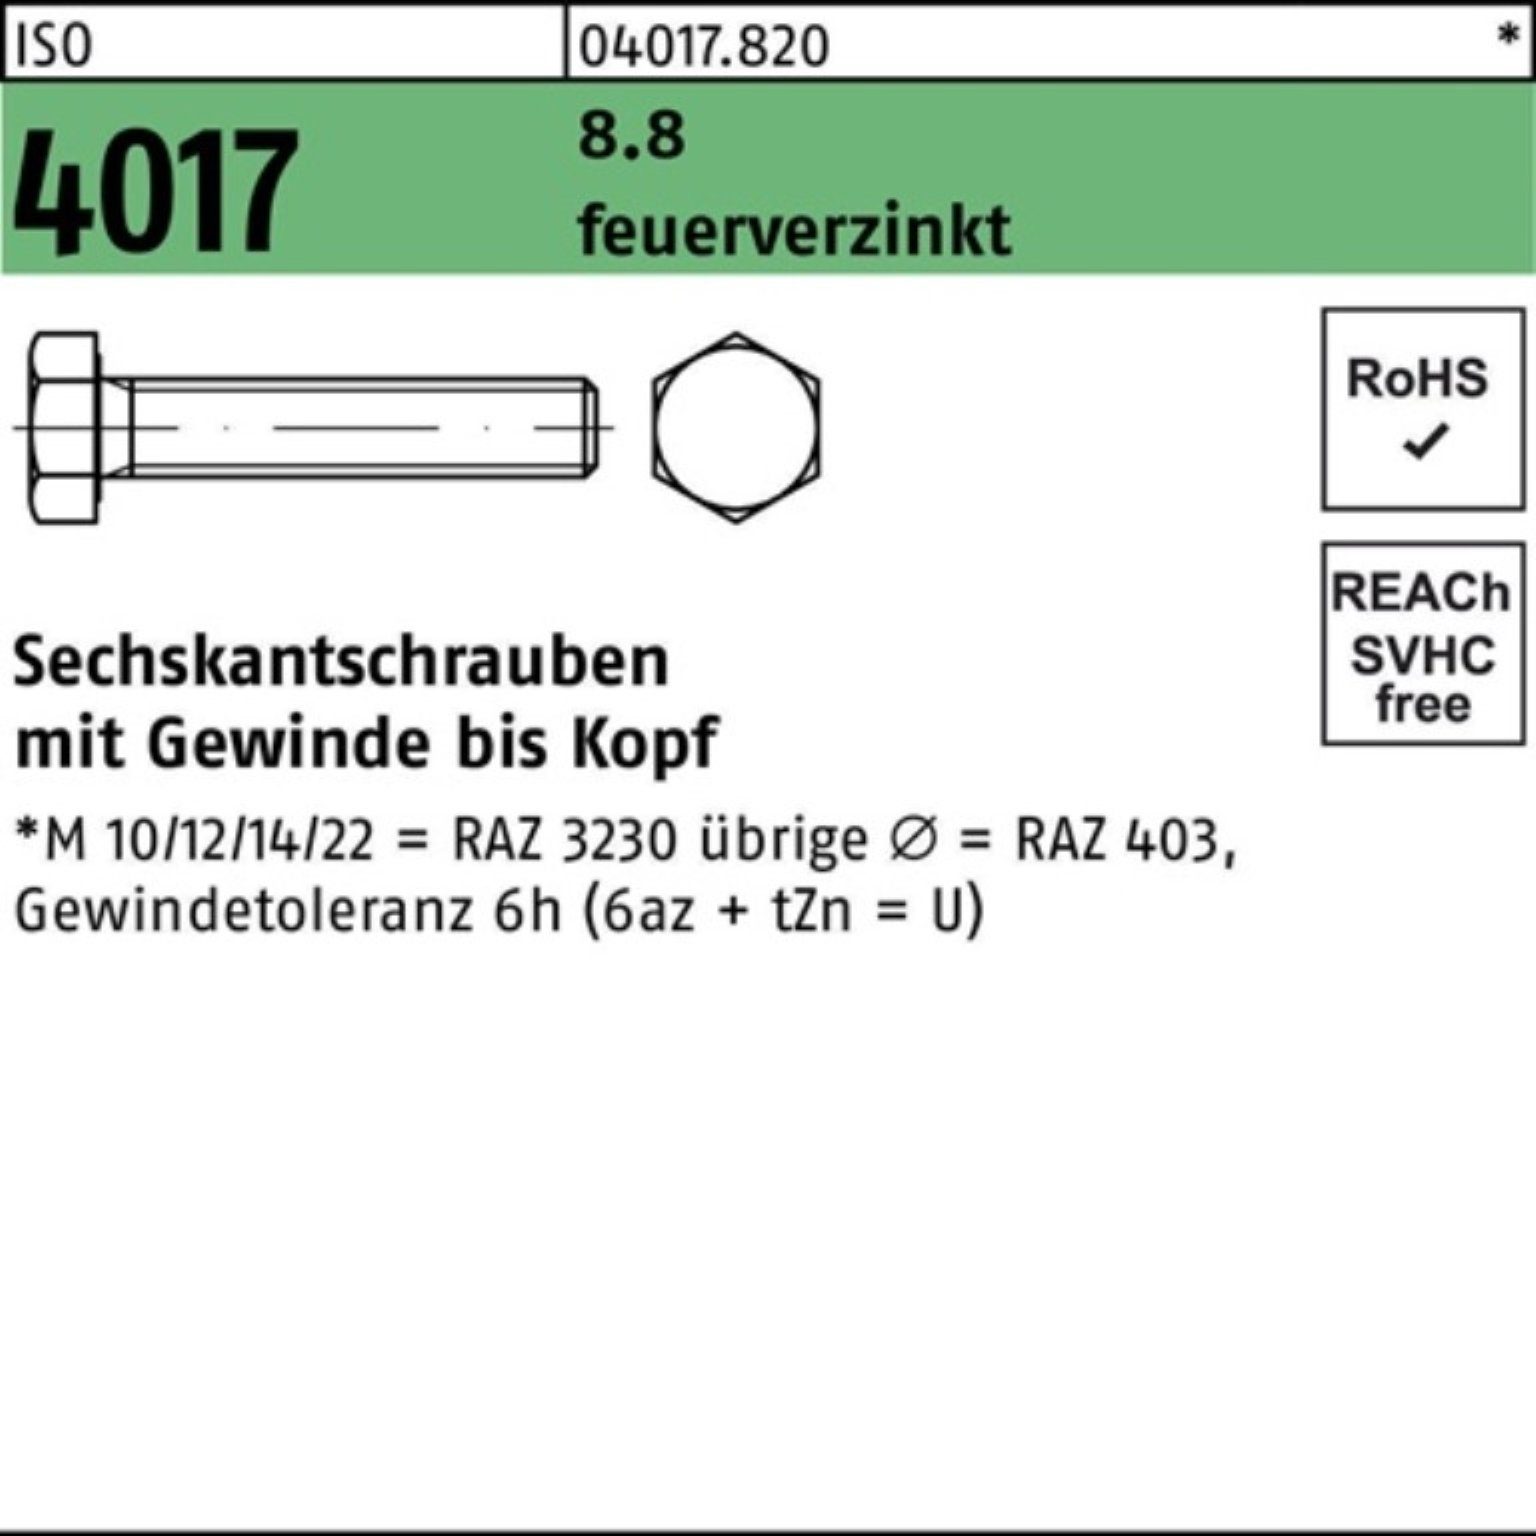 Bufab Sechskantschraube St 8.8 ISO VG 200 18 200er feuerverz. 4017 M10x Sechskantschraube Pack